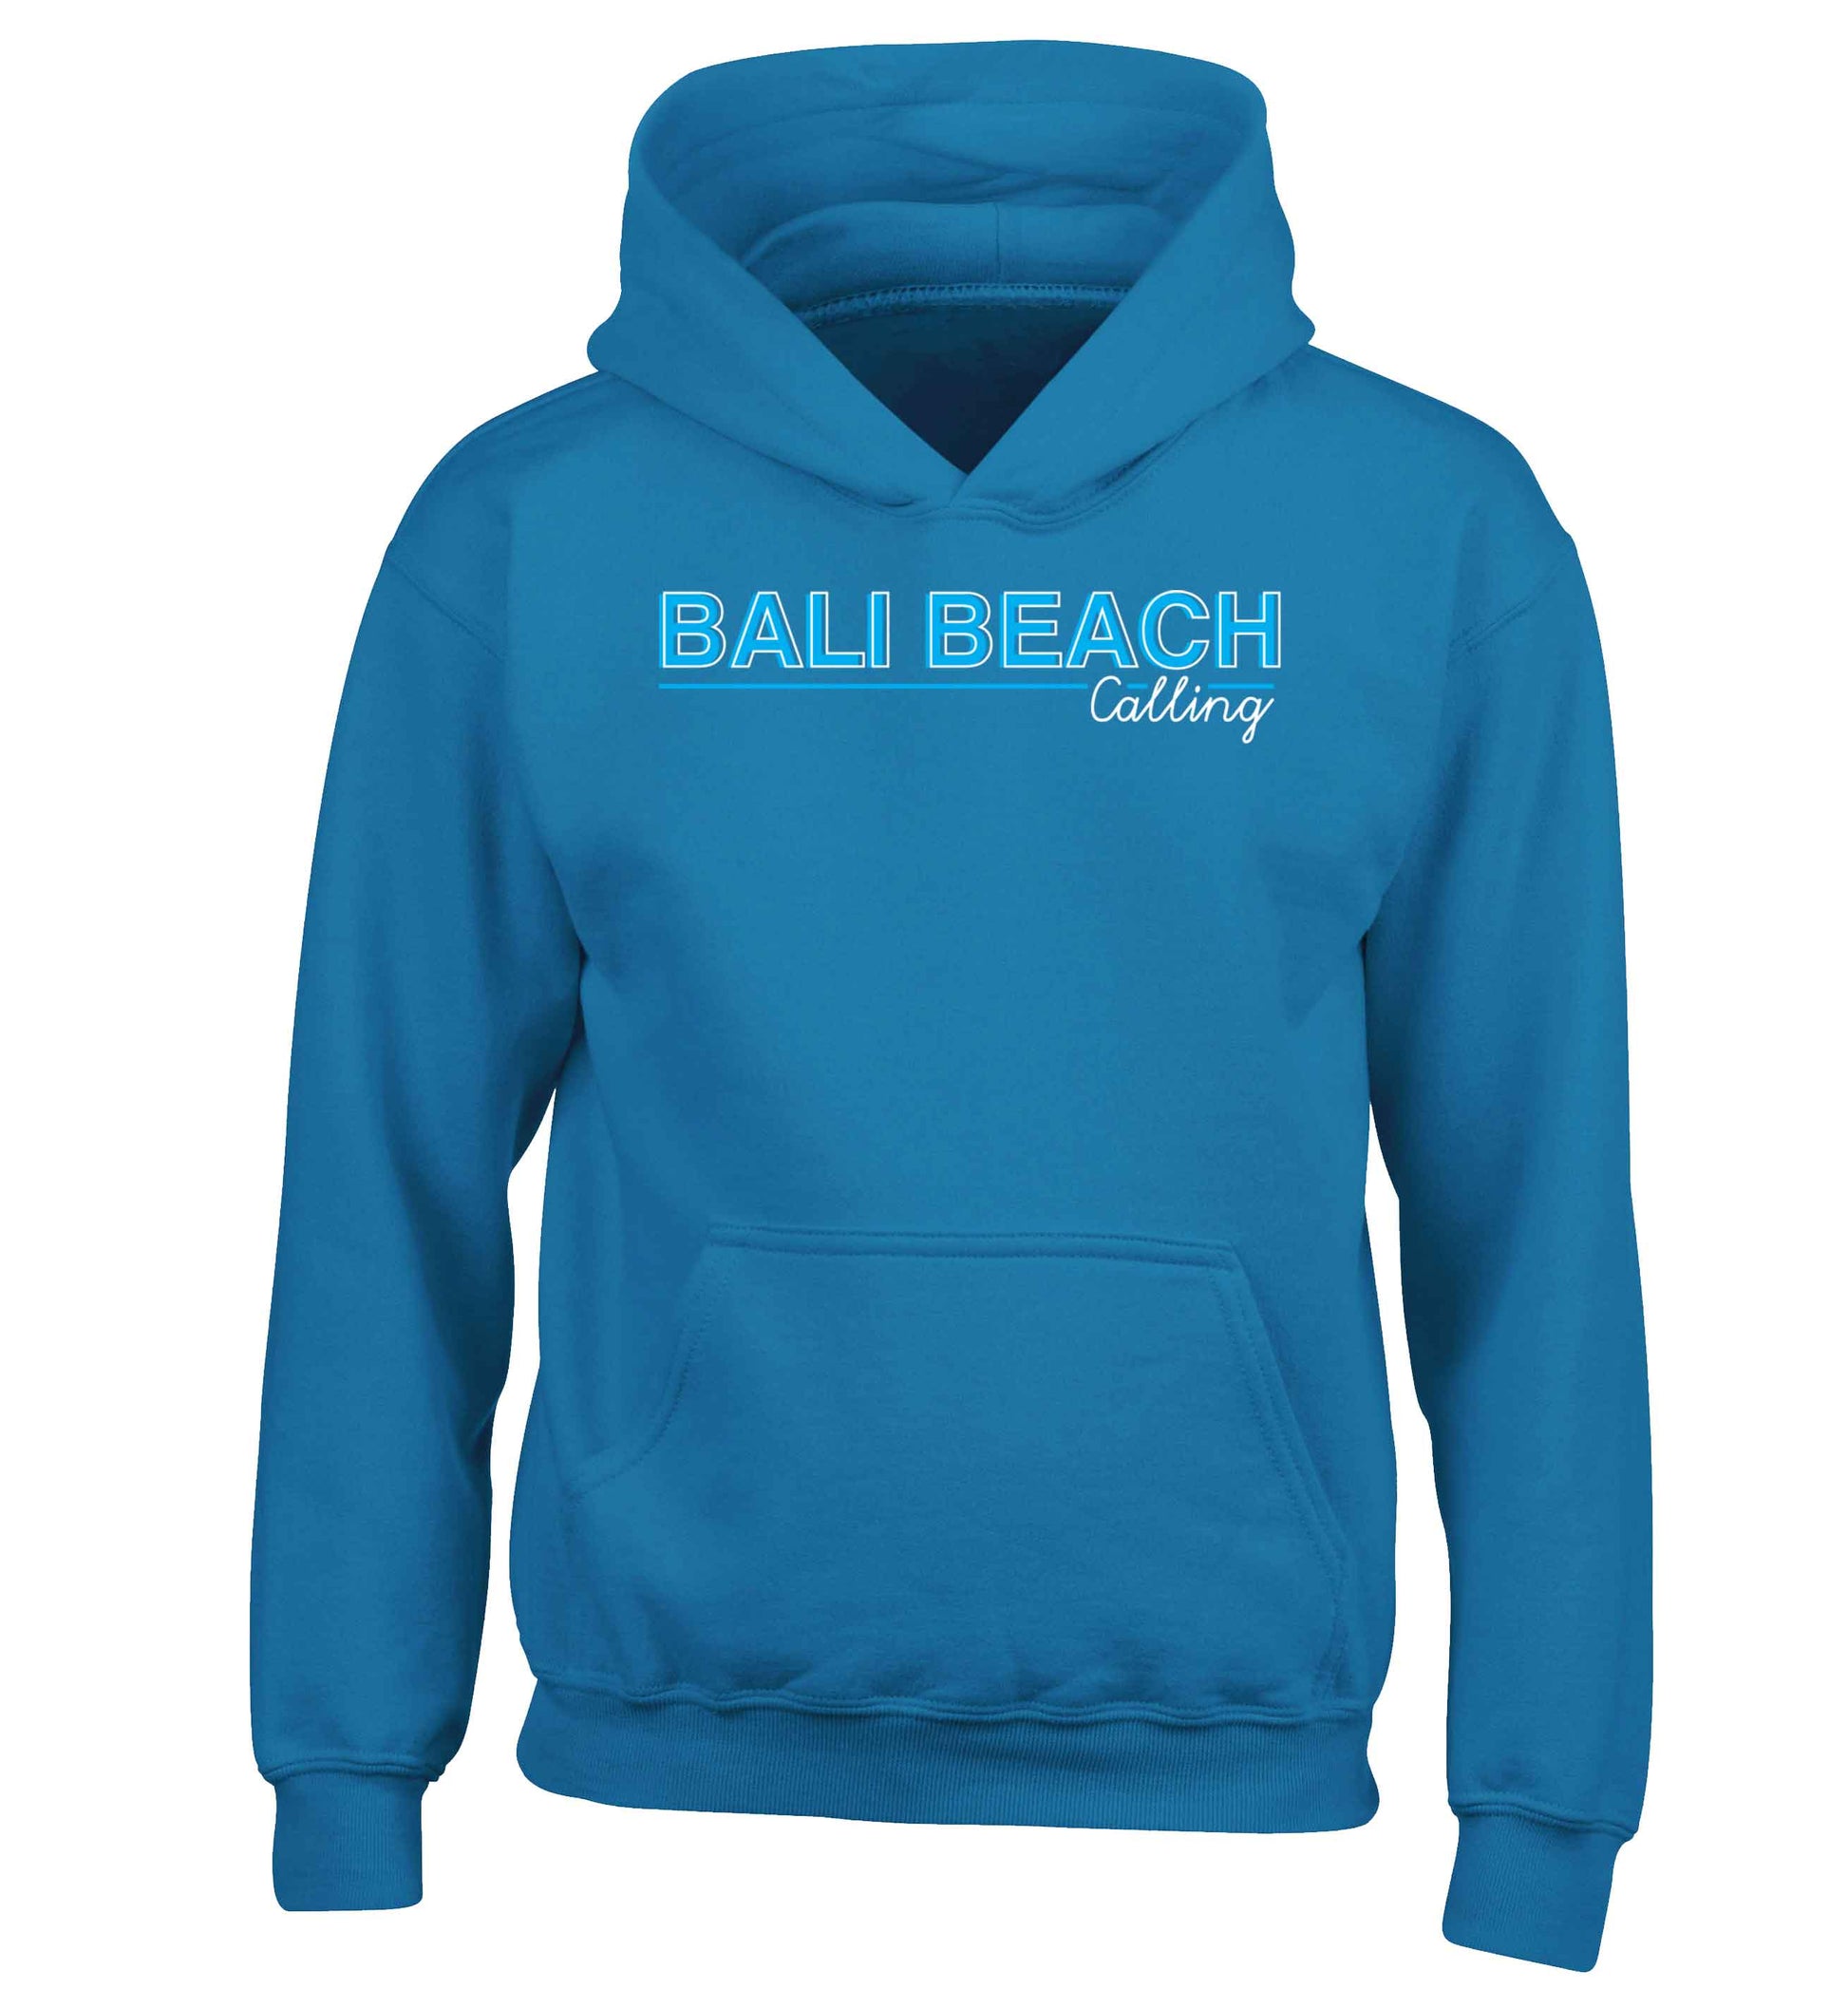 Bali beach calling children's blue hoodie 12-13 Years